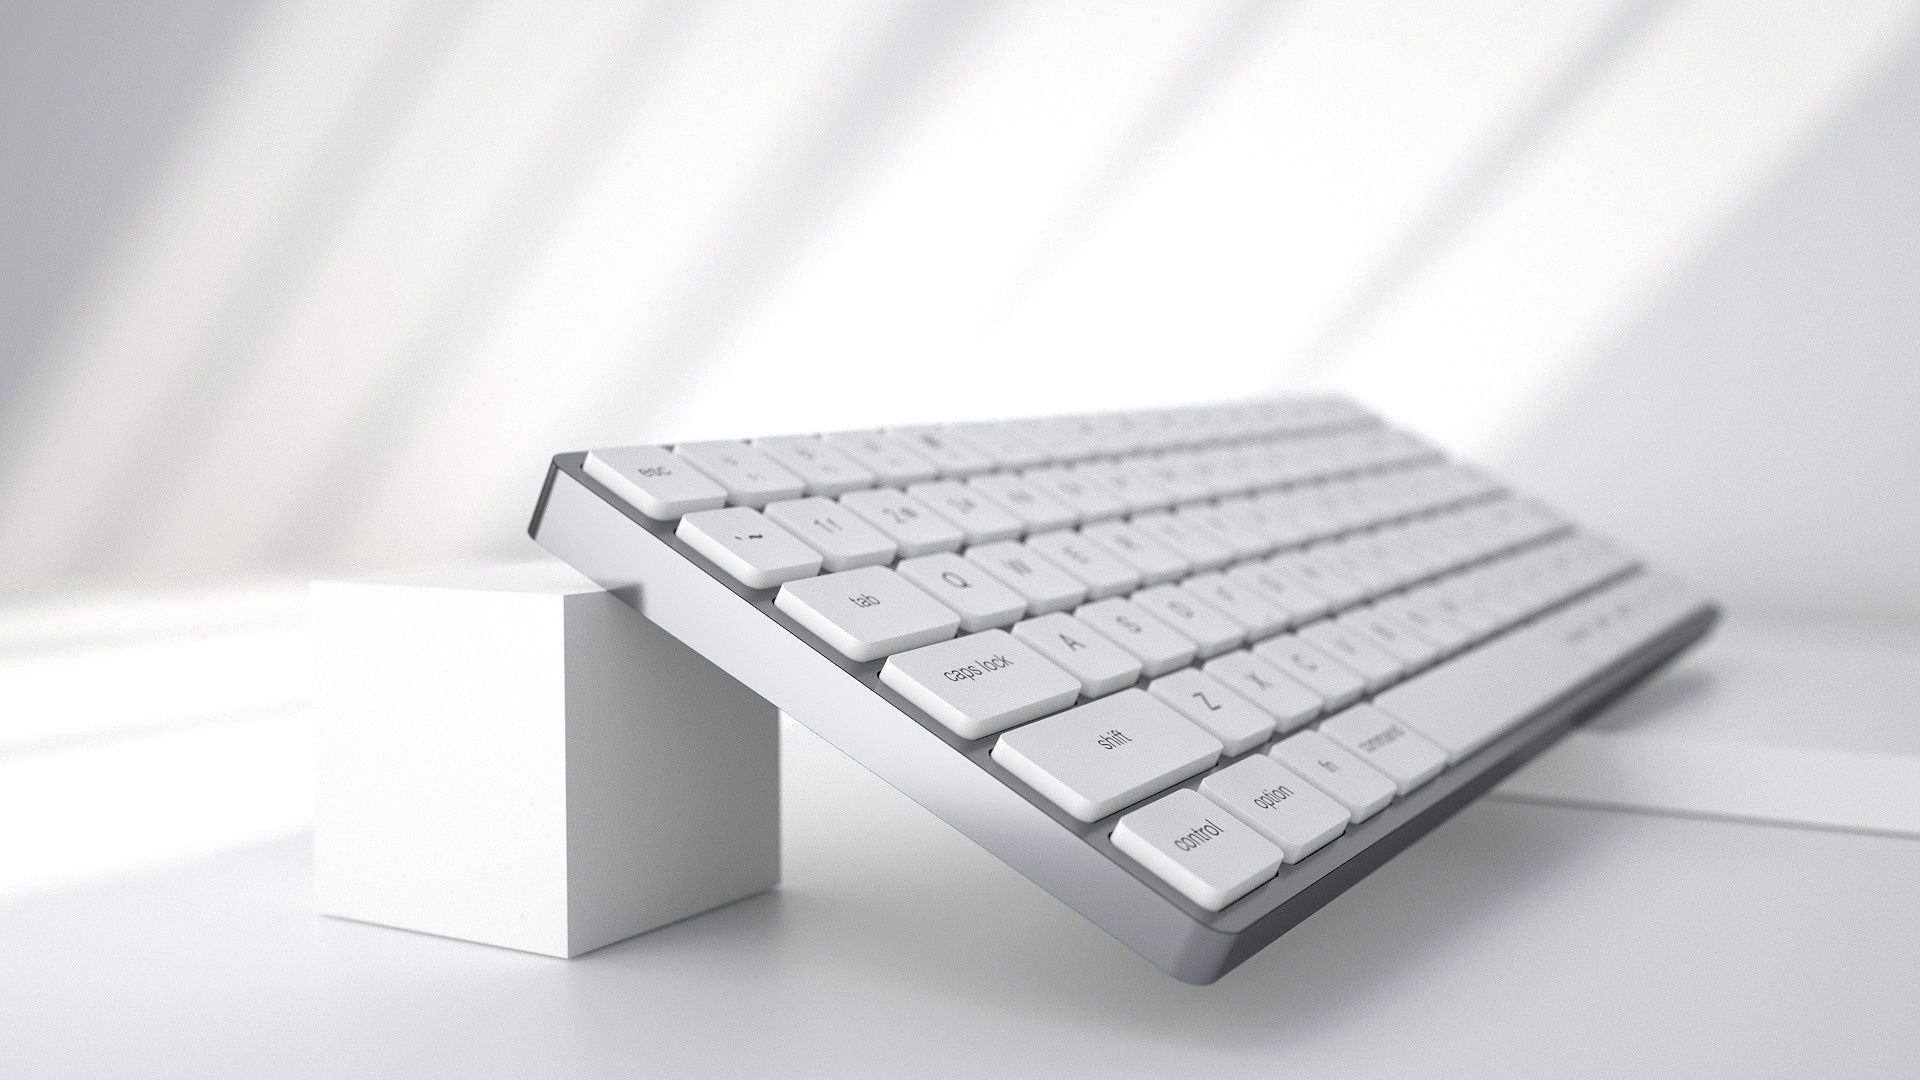 Apple immagina un Mac-Inside-a-Keyboard che rievoca i computer domestici degli anni '80

